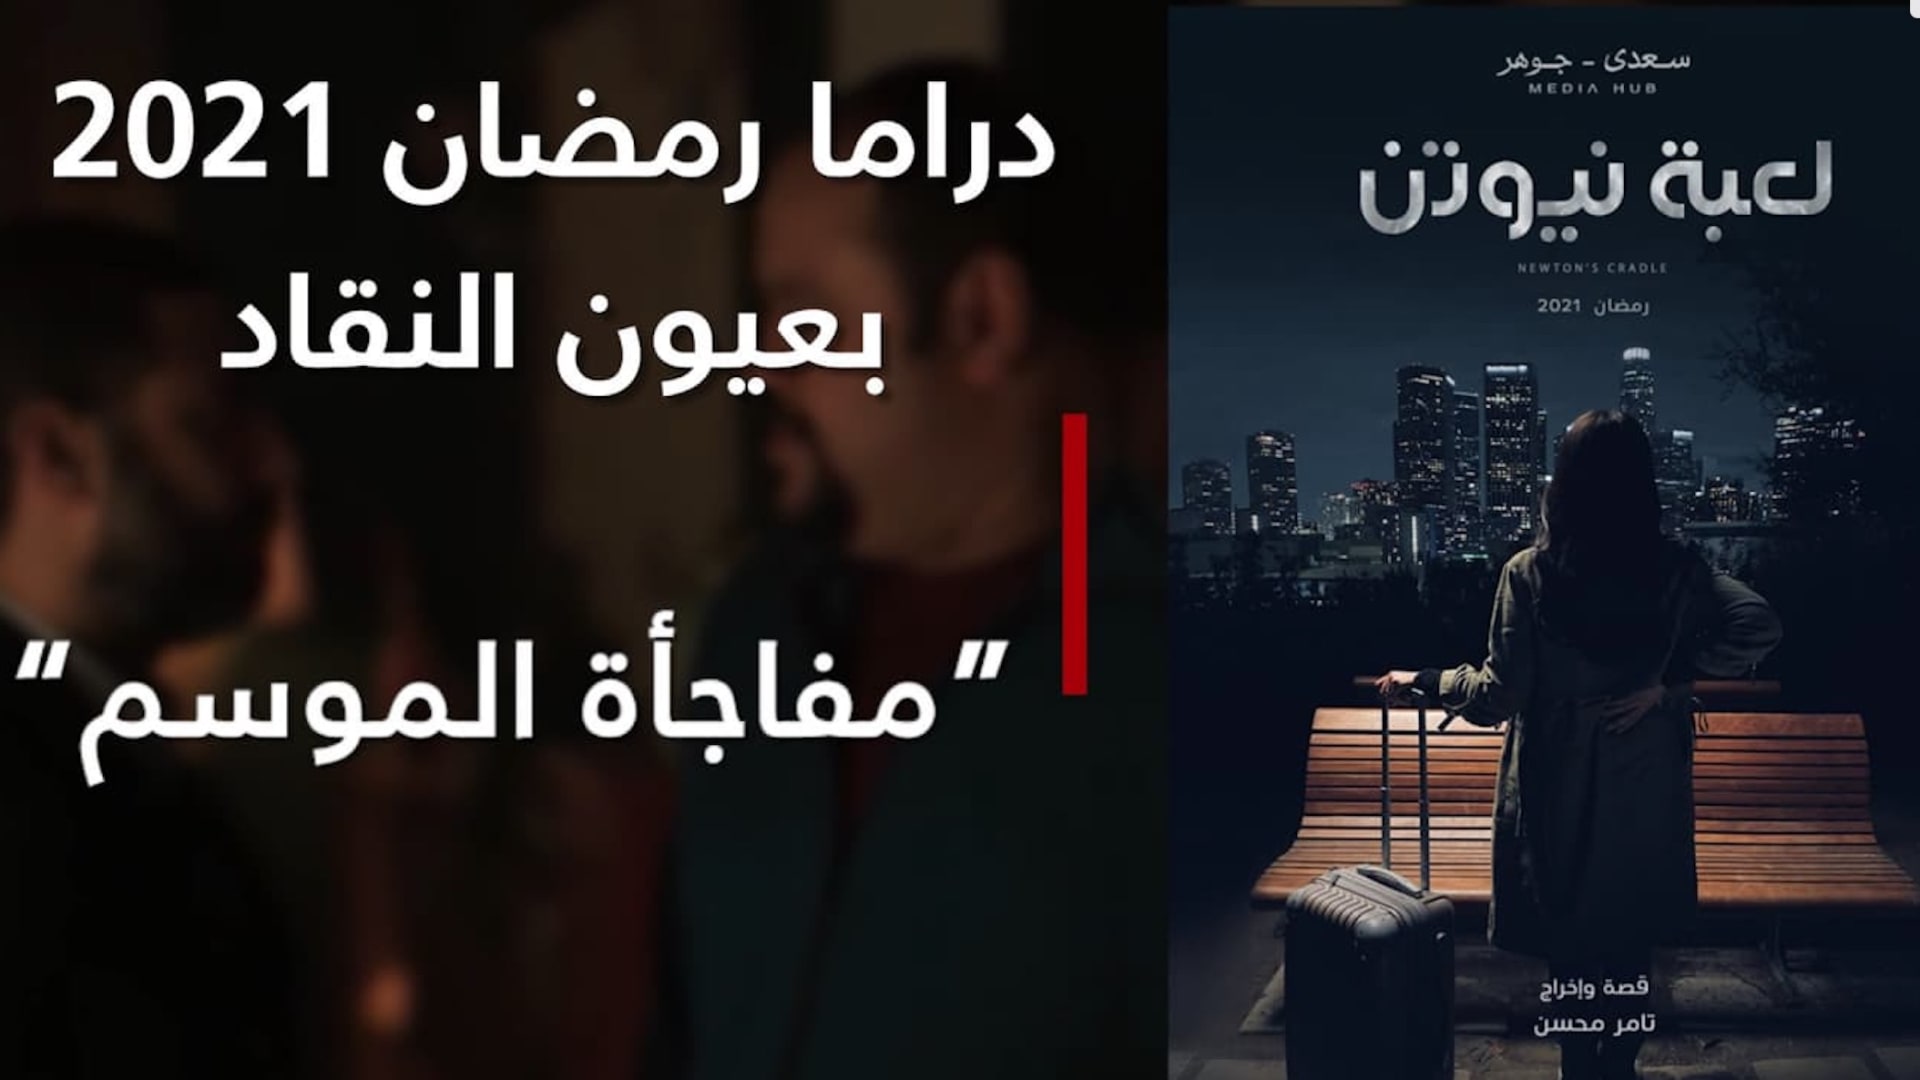 "لعبة نيوتن": مفاجأة الموسم و"الوسامة ليست كل شيء"... دراما رمضان2021 بعيون النقاد